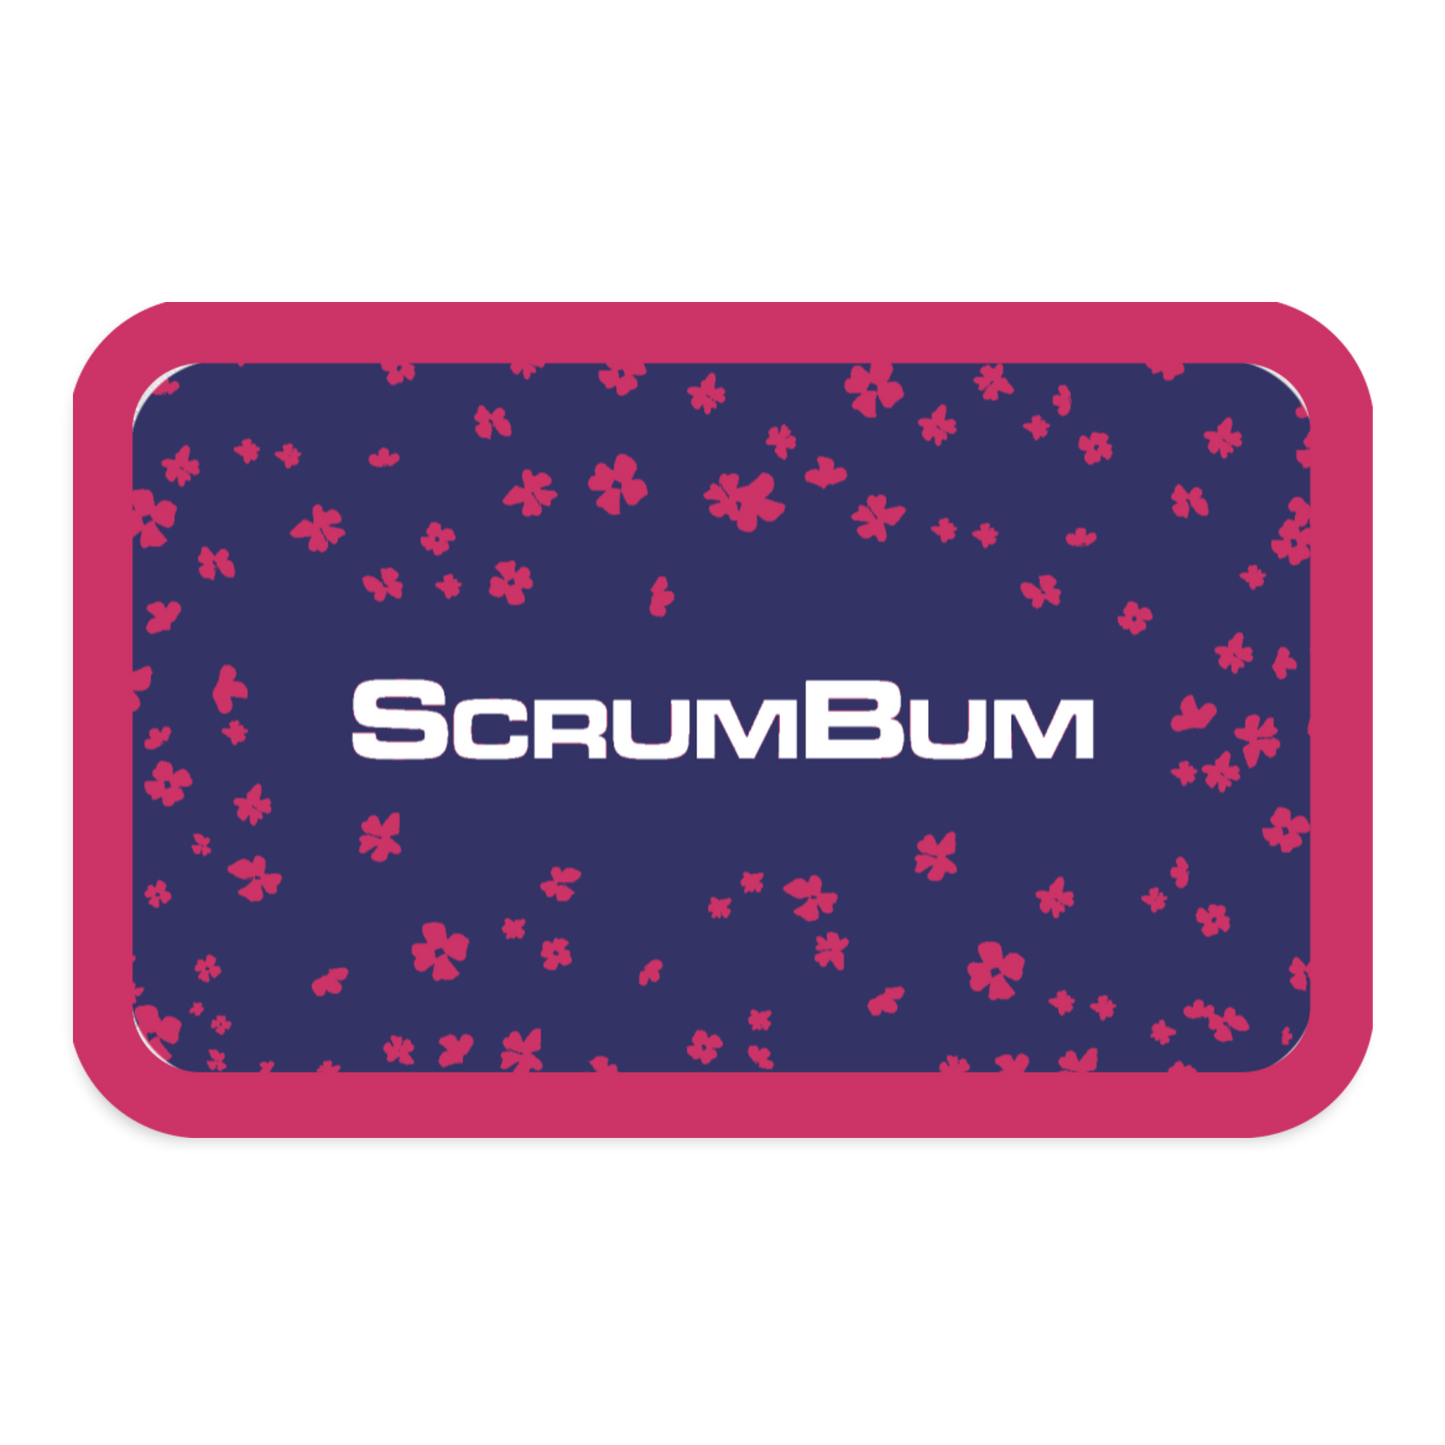 ScrumBum patch